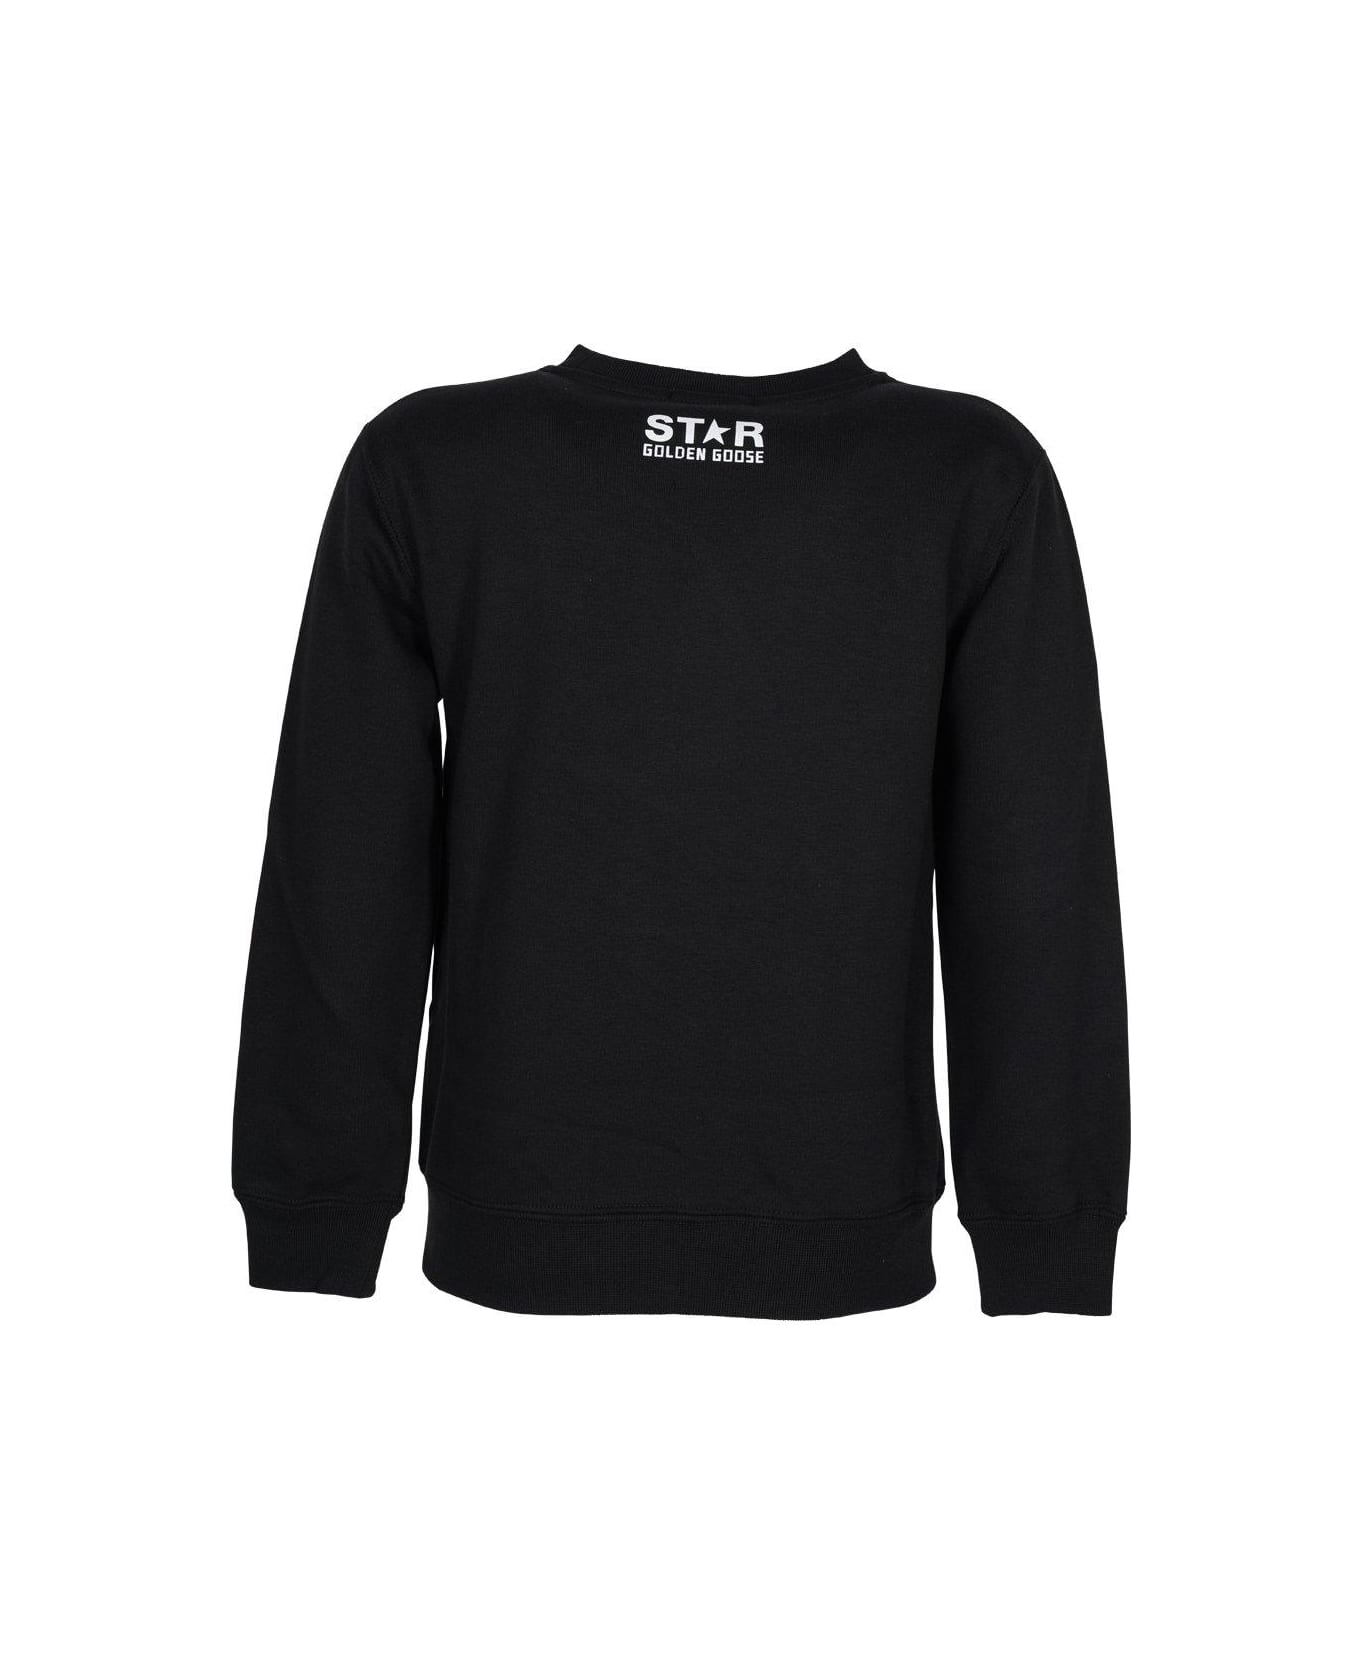 Golden Goose Black Star Collection Long-sleeved Sweatshirt - Black/white ニットウェア＆スウェットシャツ